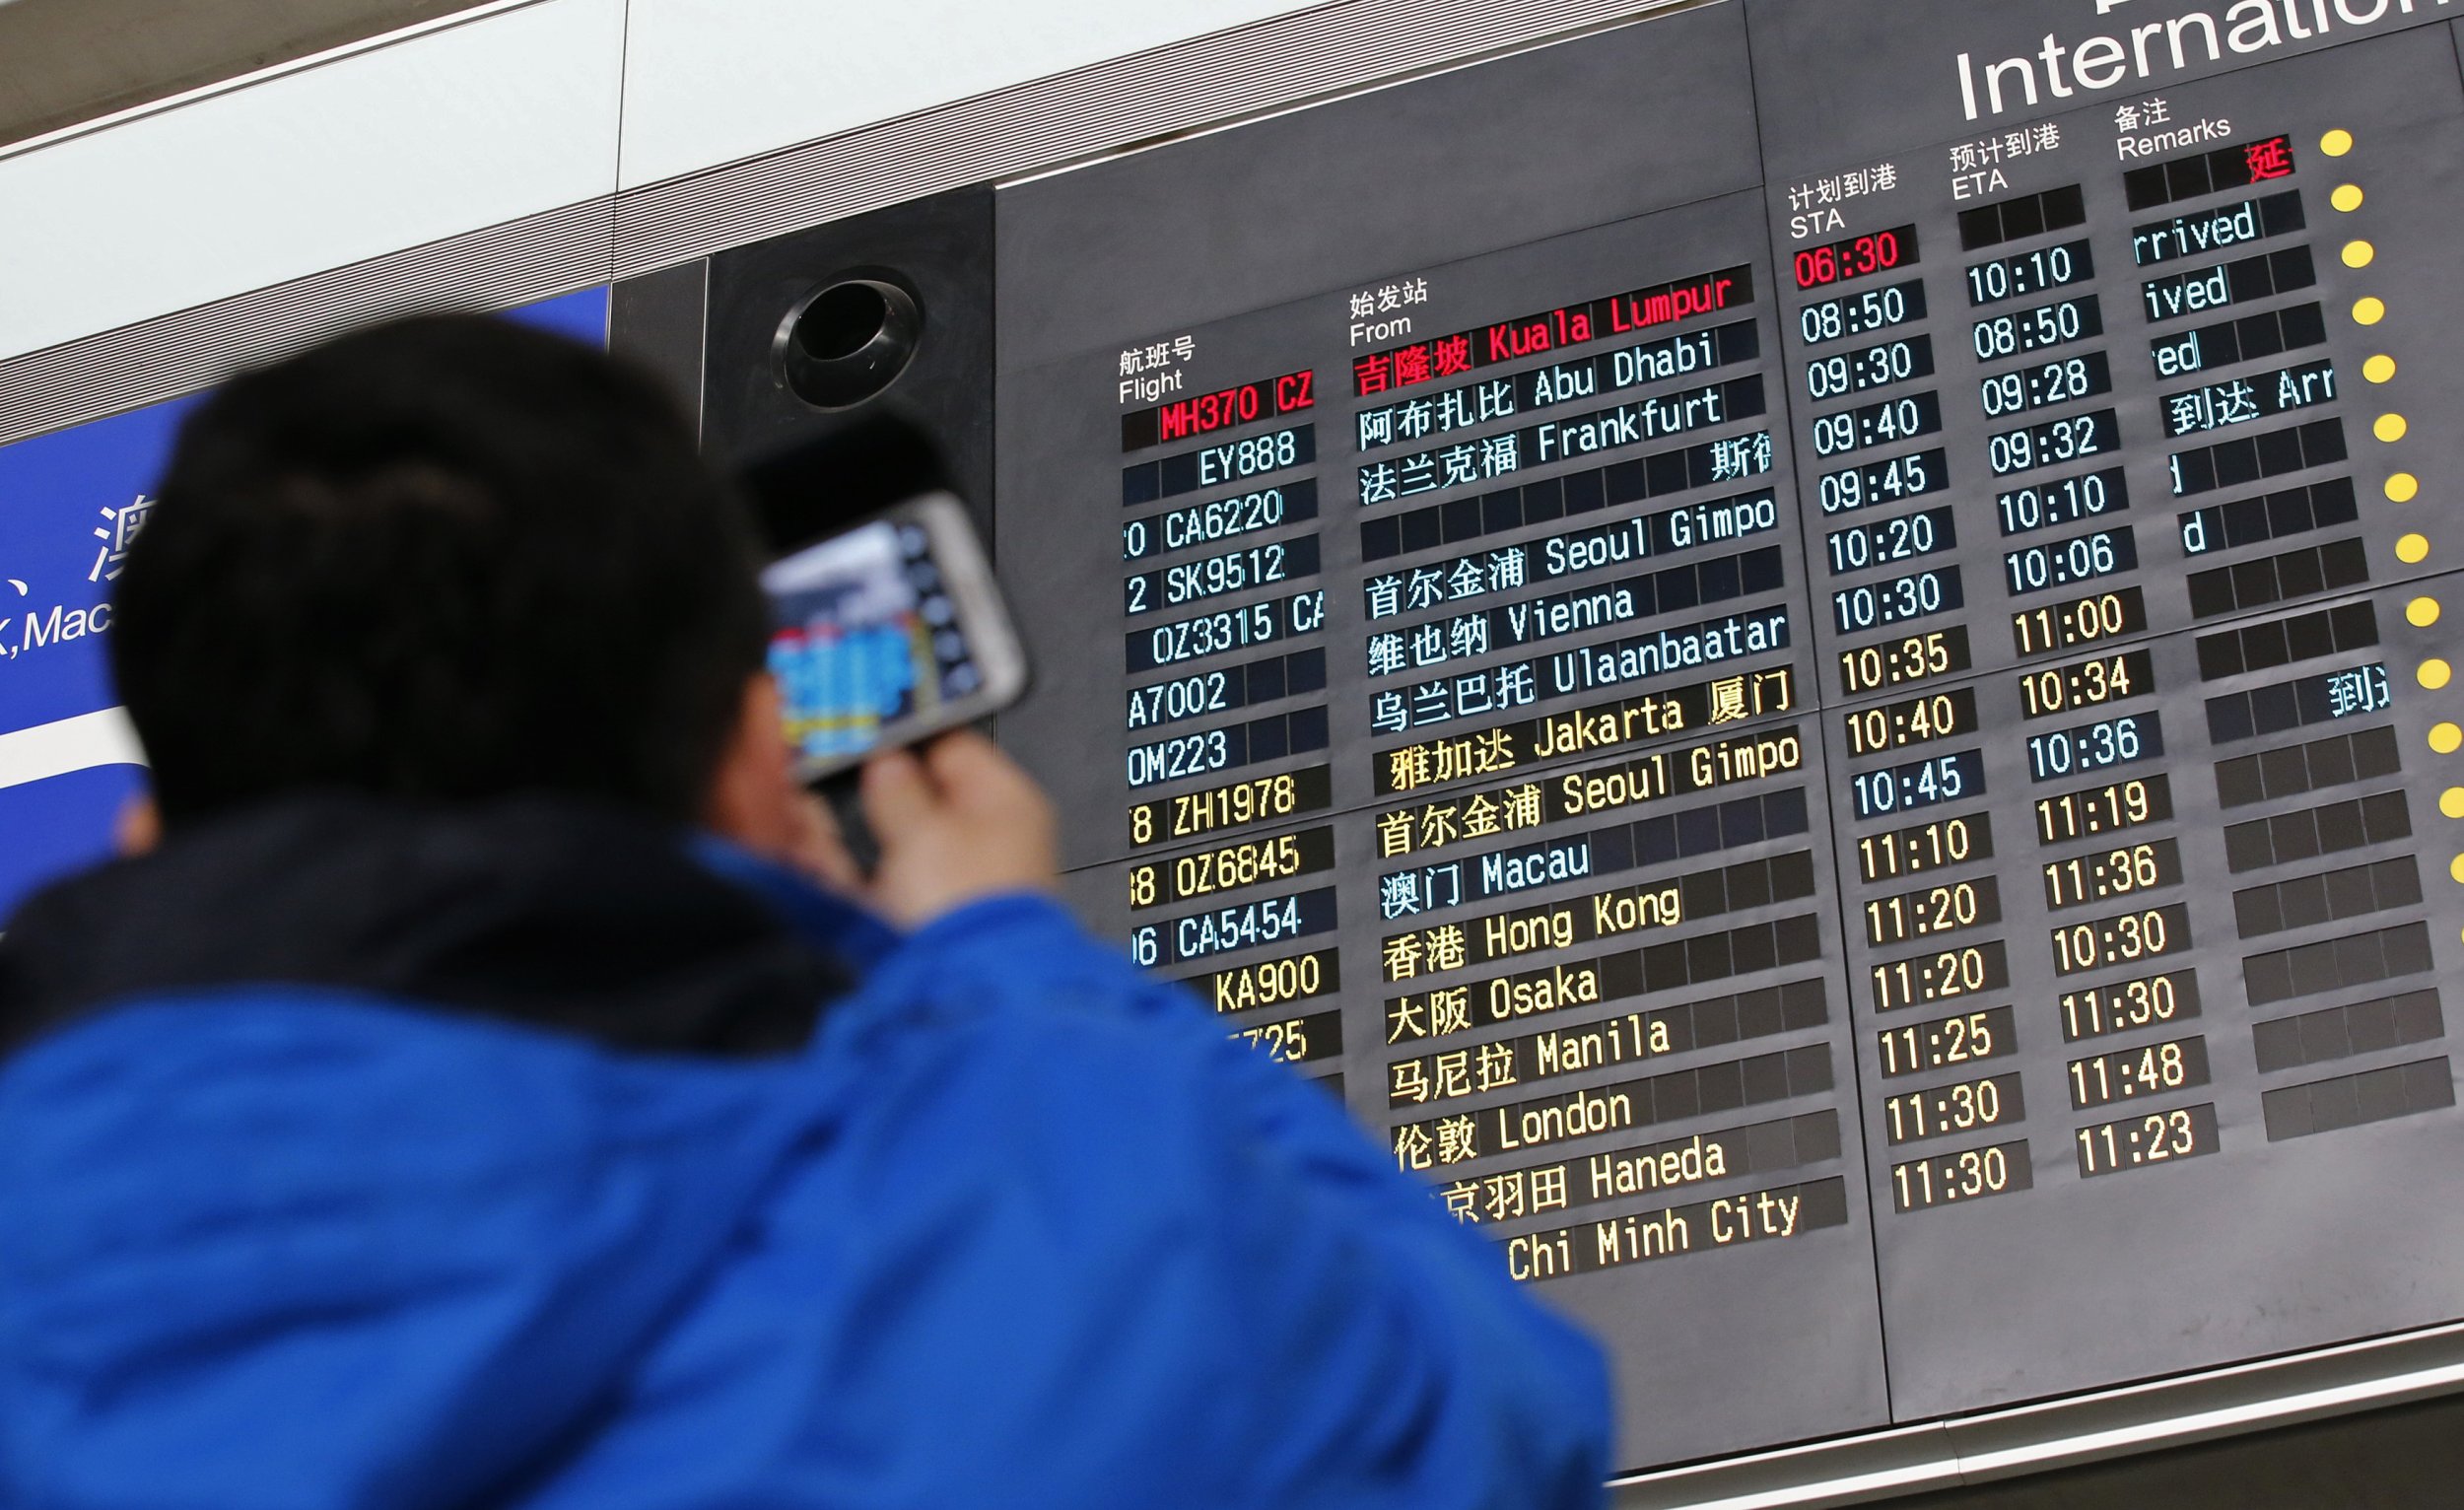 MH370 Beijing Flight Board